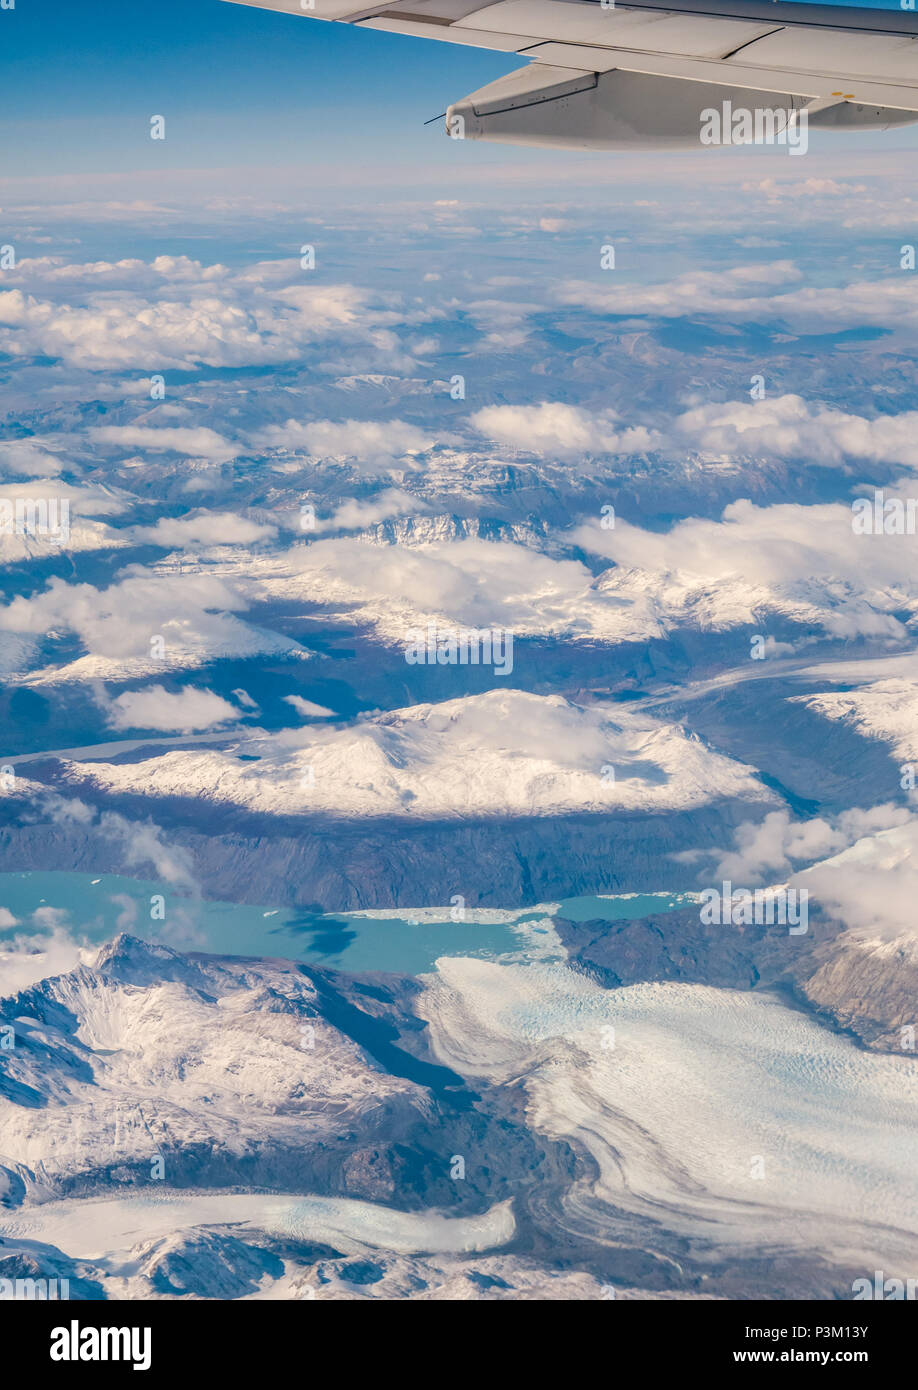 Vista dalla finestra aereo della coperta di neve montagne delle Ande con laghi e ghiacciai, iceberg, Patagonia meridionale del campo di ghiaccio, Patagonia, Cile Foto Stock